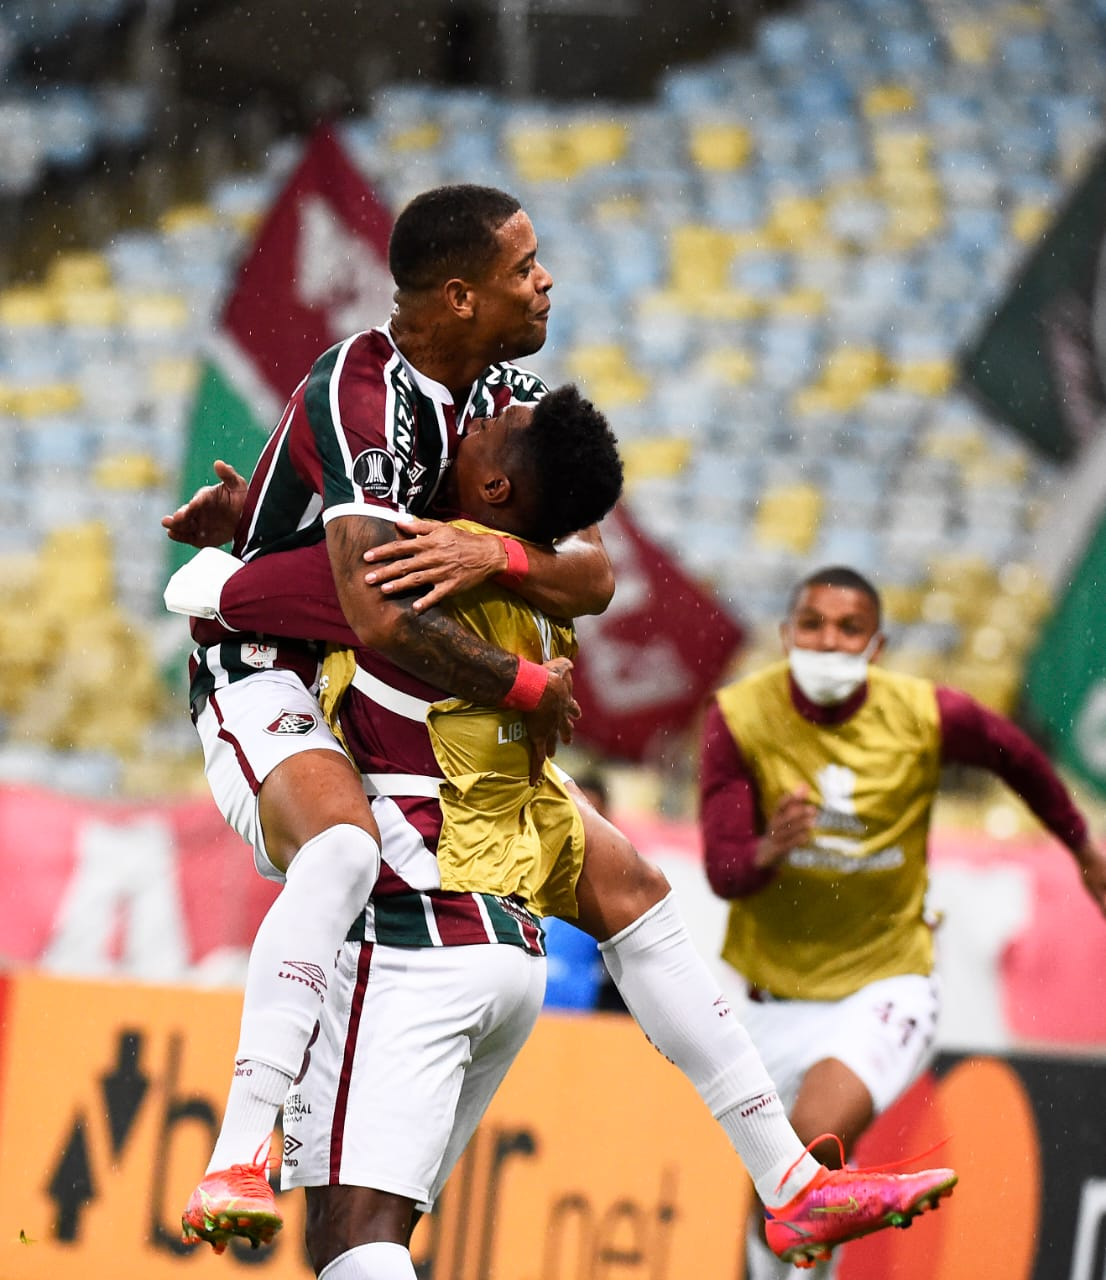 GE Fluminense #125 - Mão na vaga, pontos a melhorar e "Caio Paulista, nunca critiquei"